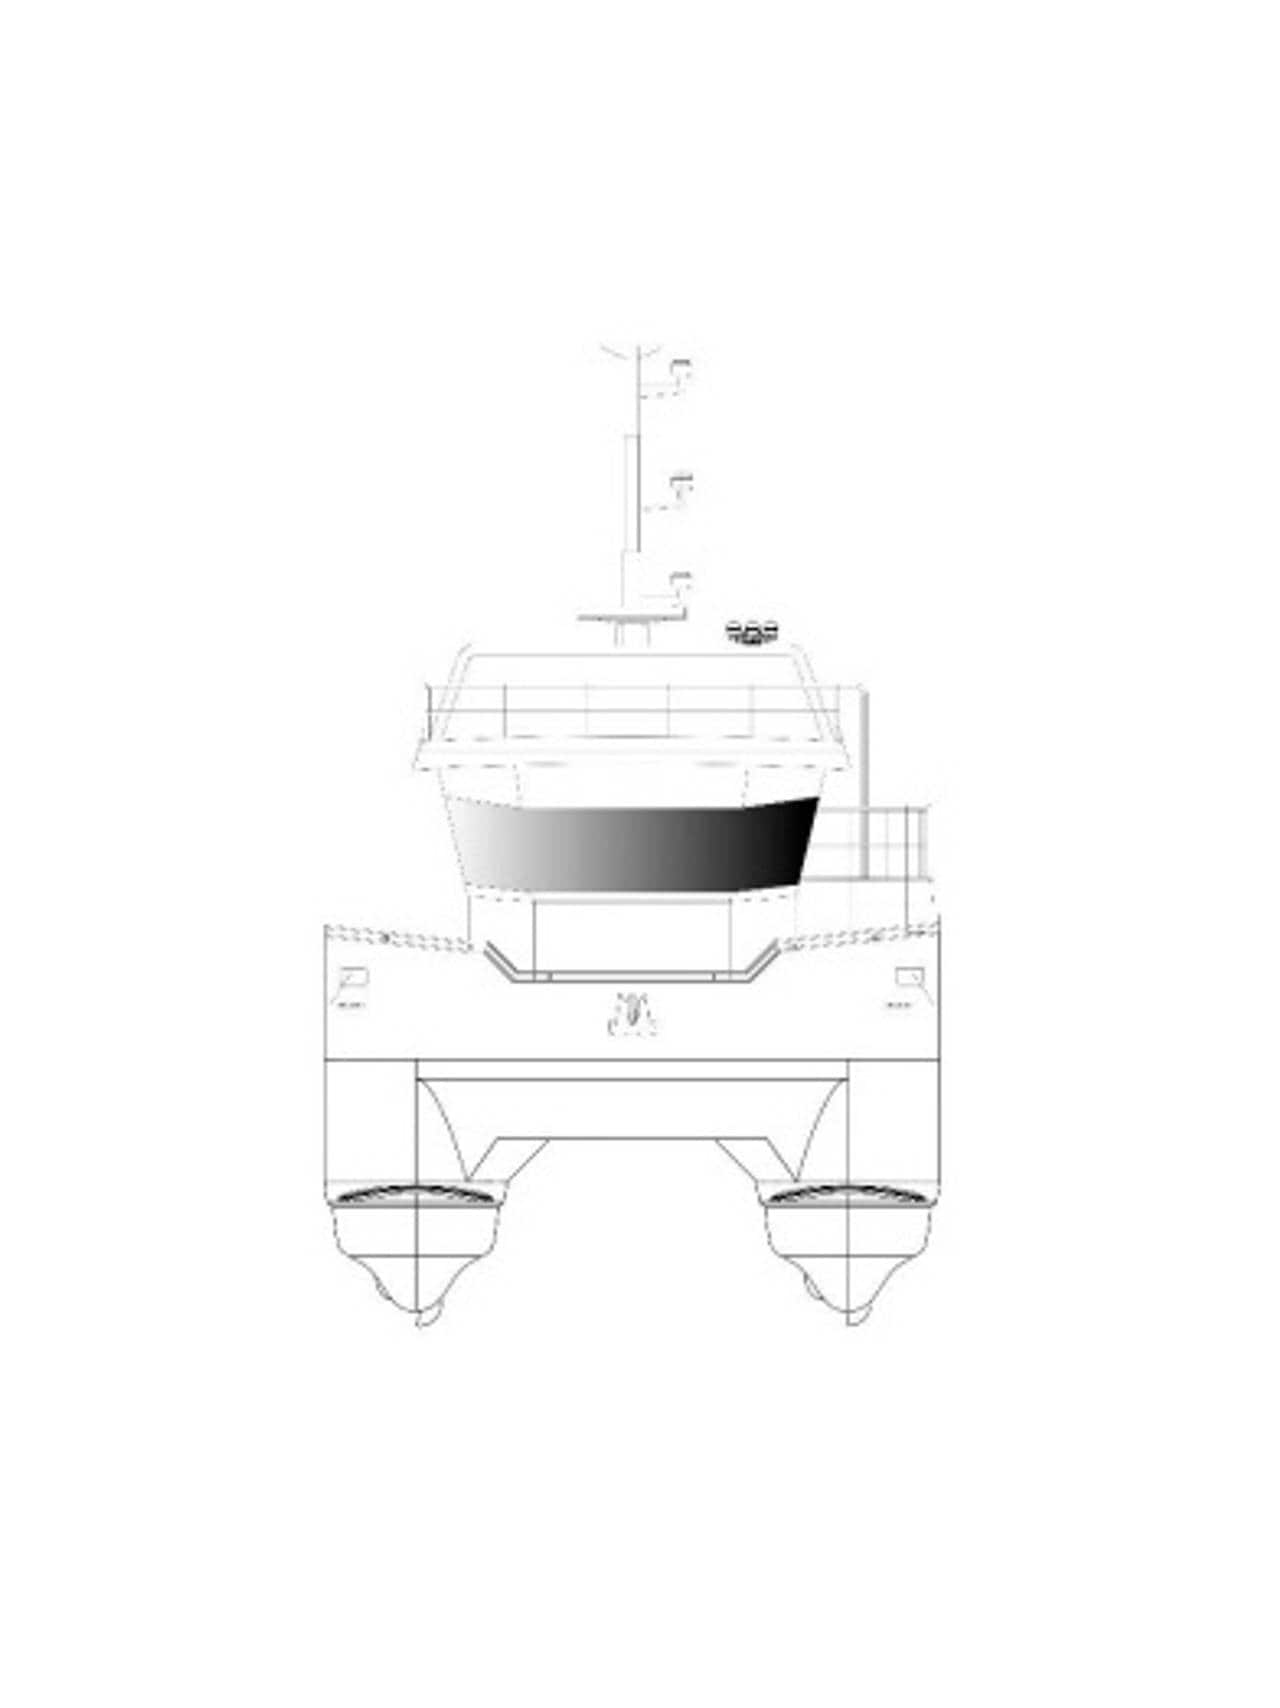 Tegning av arbeidsbåt fra Green ship design